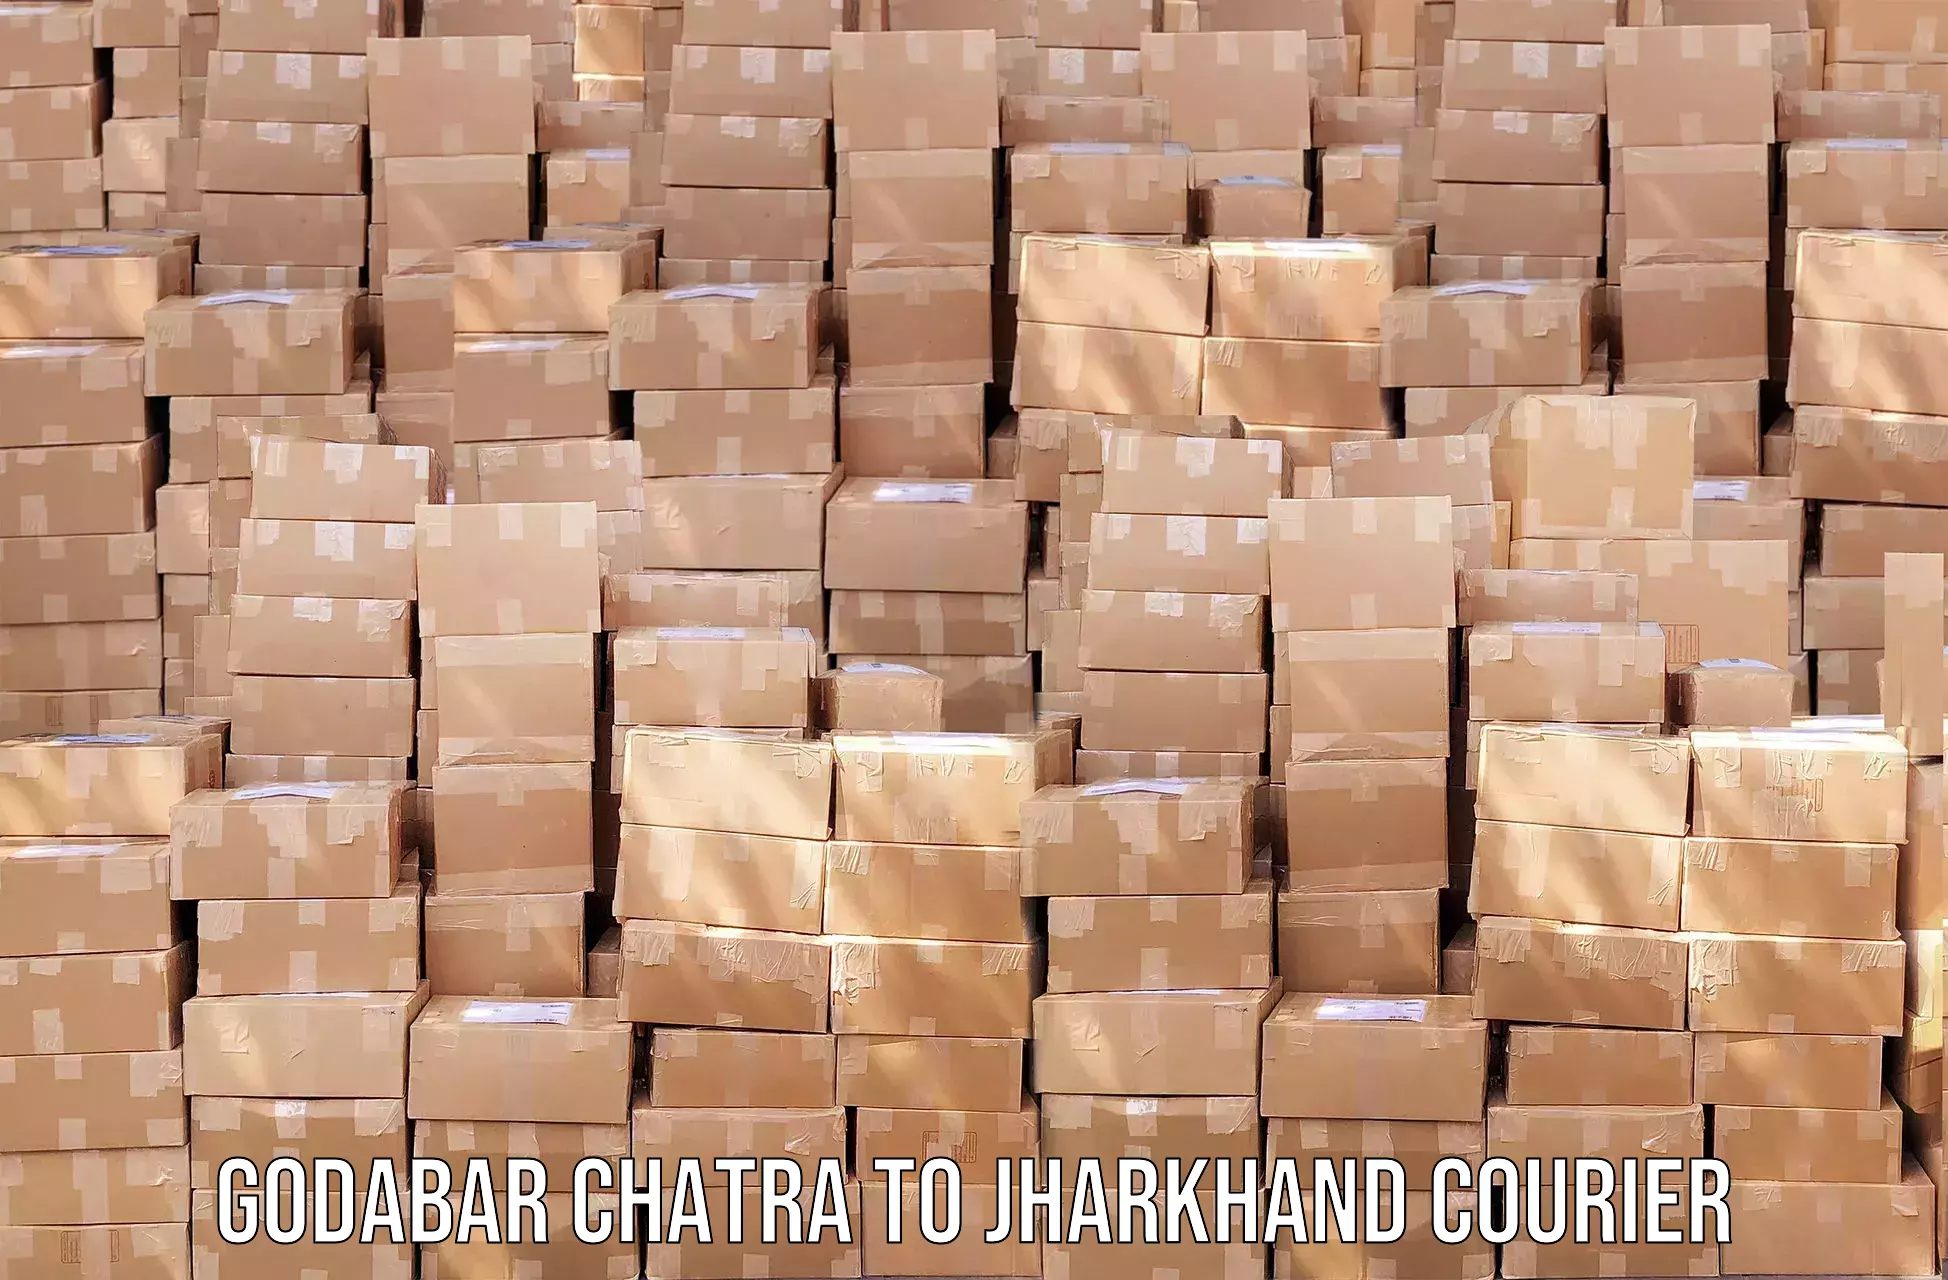 24/7 shipping services Godabar Chatra to Shikaripara